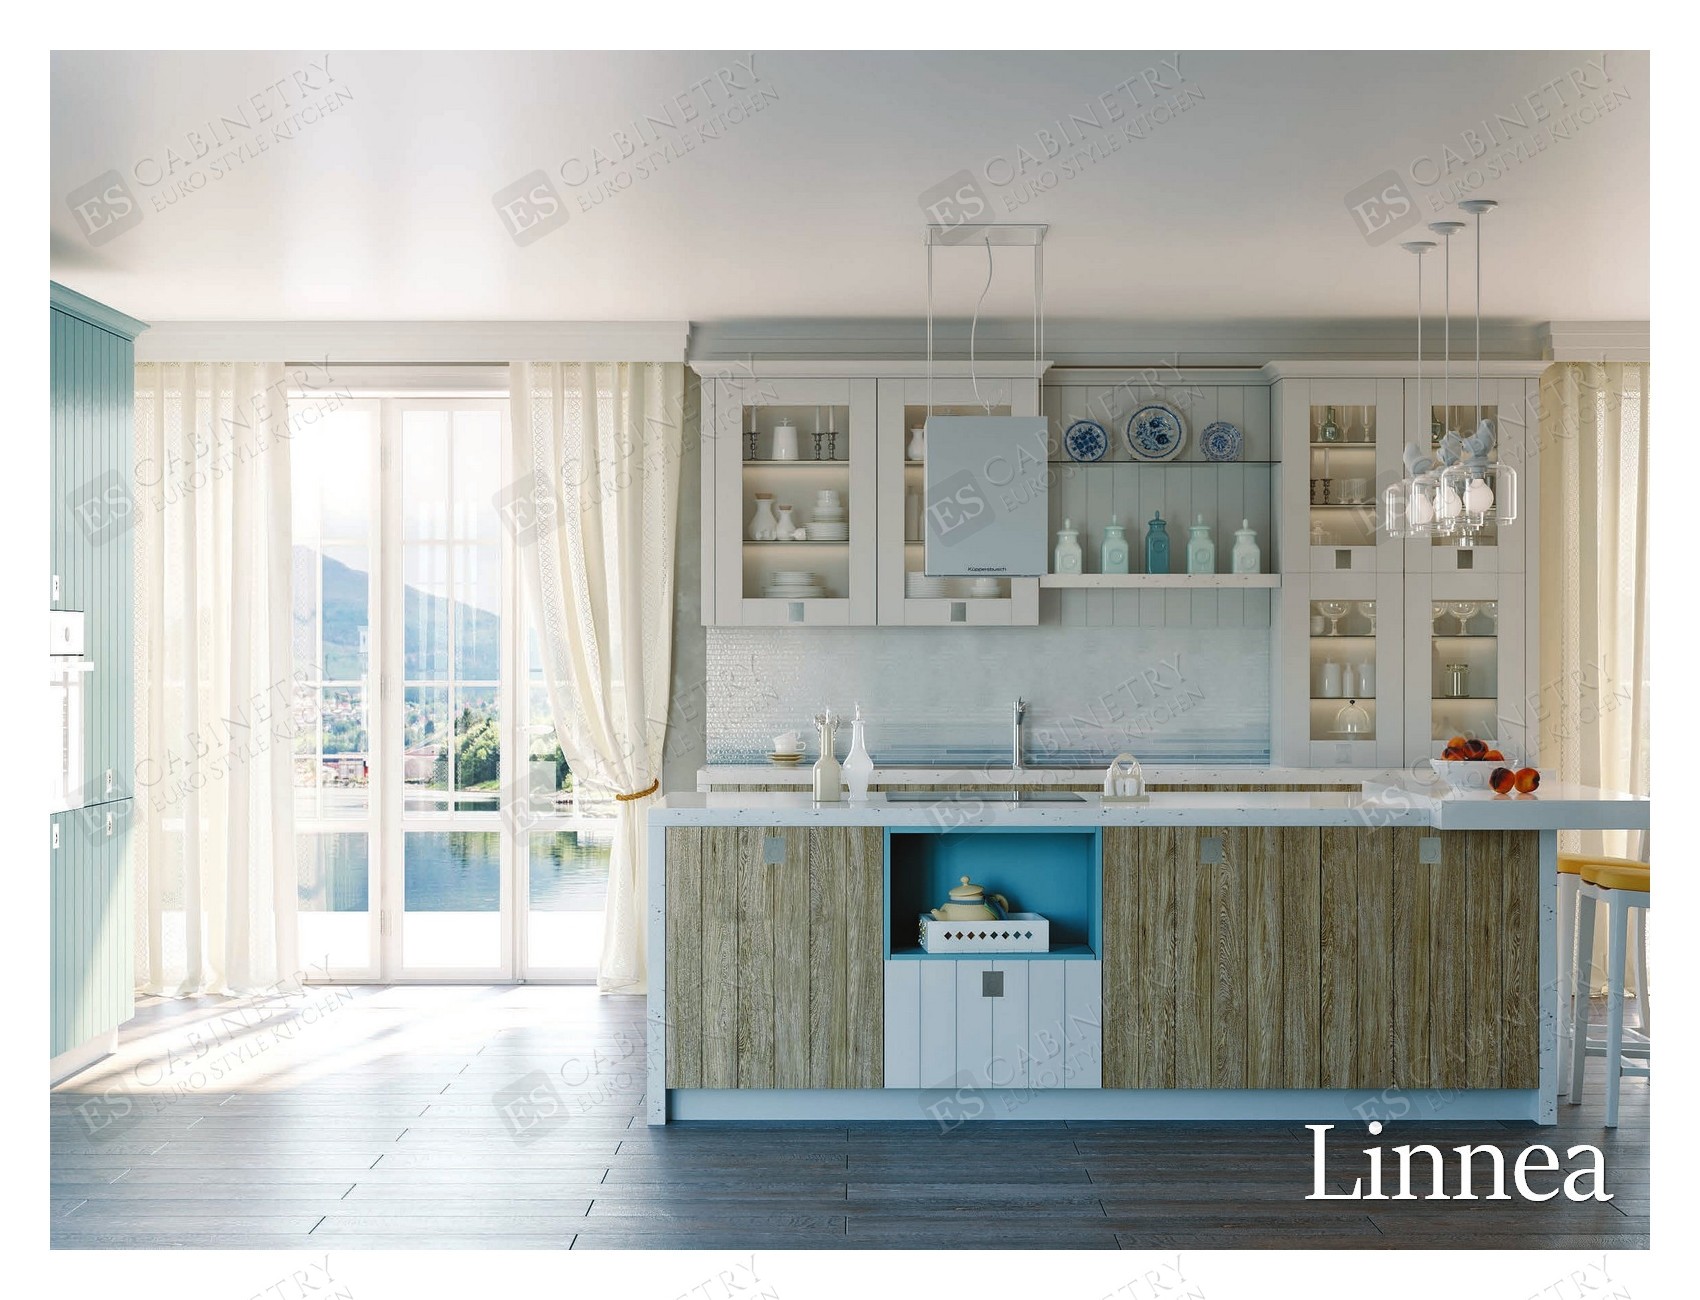 Linnea | Modern European kitchen designs